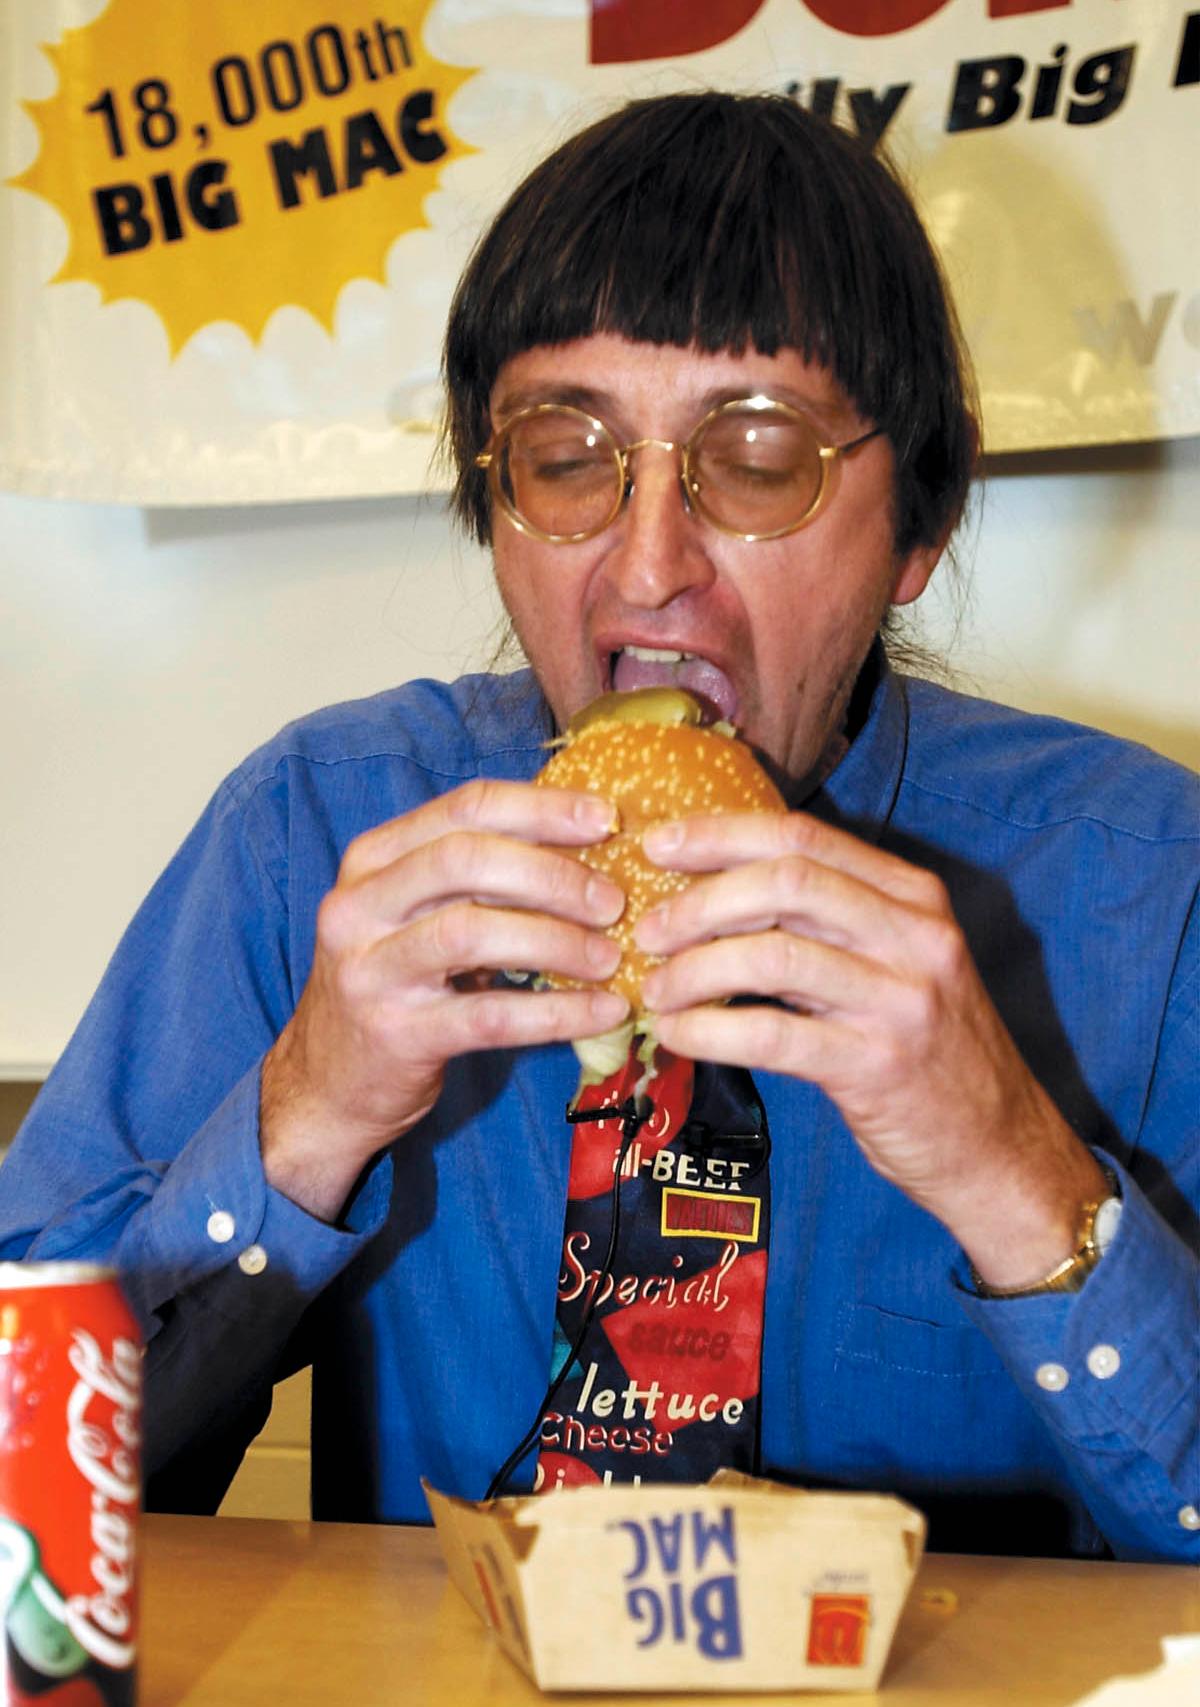 Så här såg det ut när Don Gorske åt Big Mac nummer 18 000 tisdagen 6 november år 2001. 